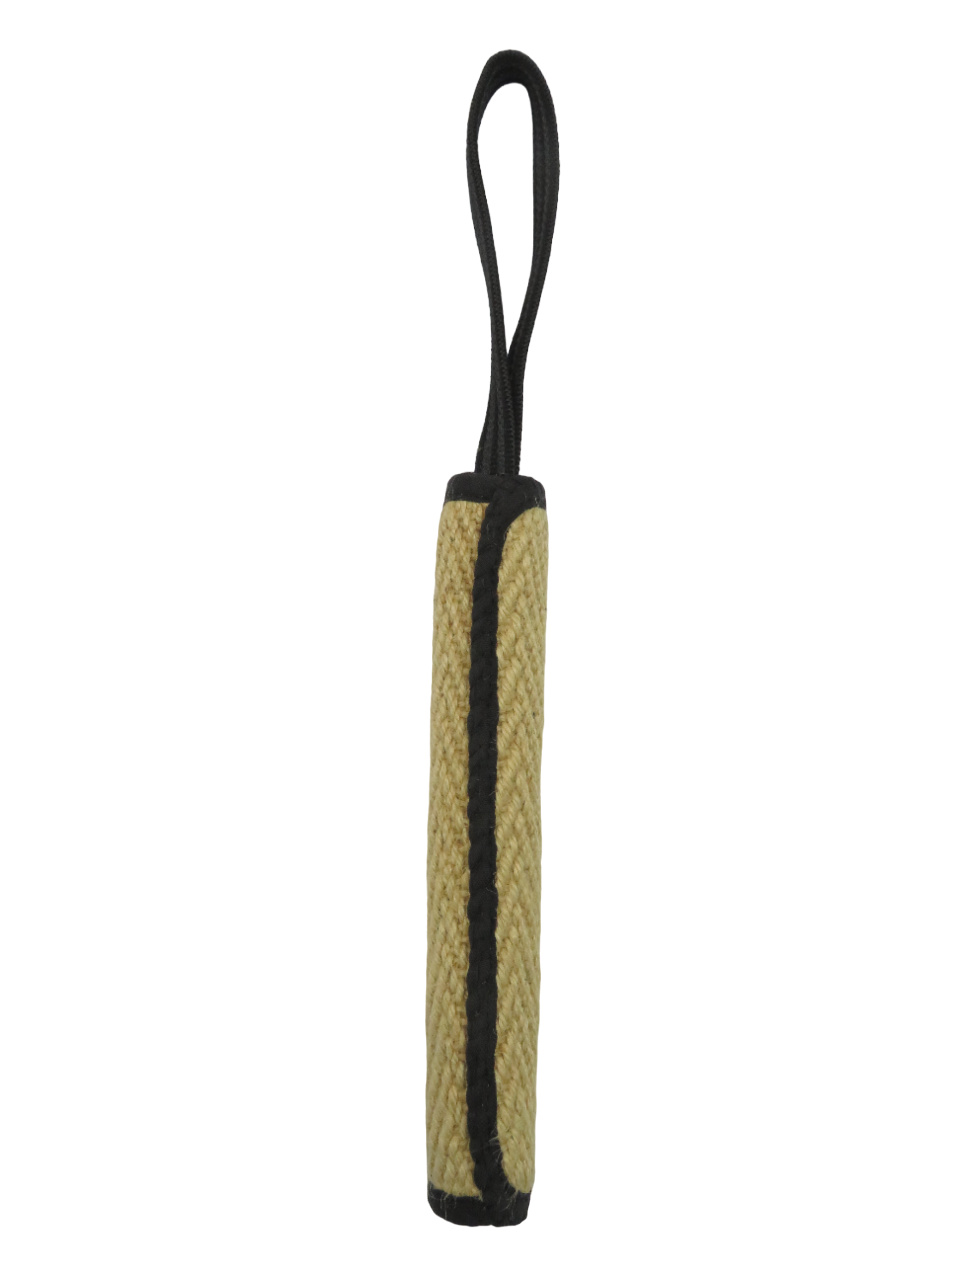 BOW WOW BOW WOW джутовая палка с 9-миллиметровой прорезиненной ручкой (натуральная) (120 г) bow wow bow wow игровая джутовая натуральная полусфера 200 г